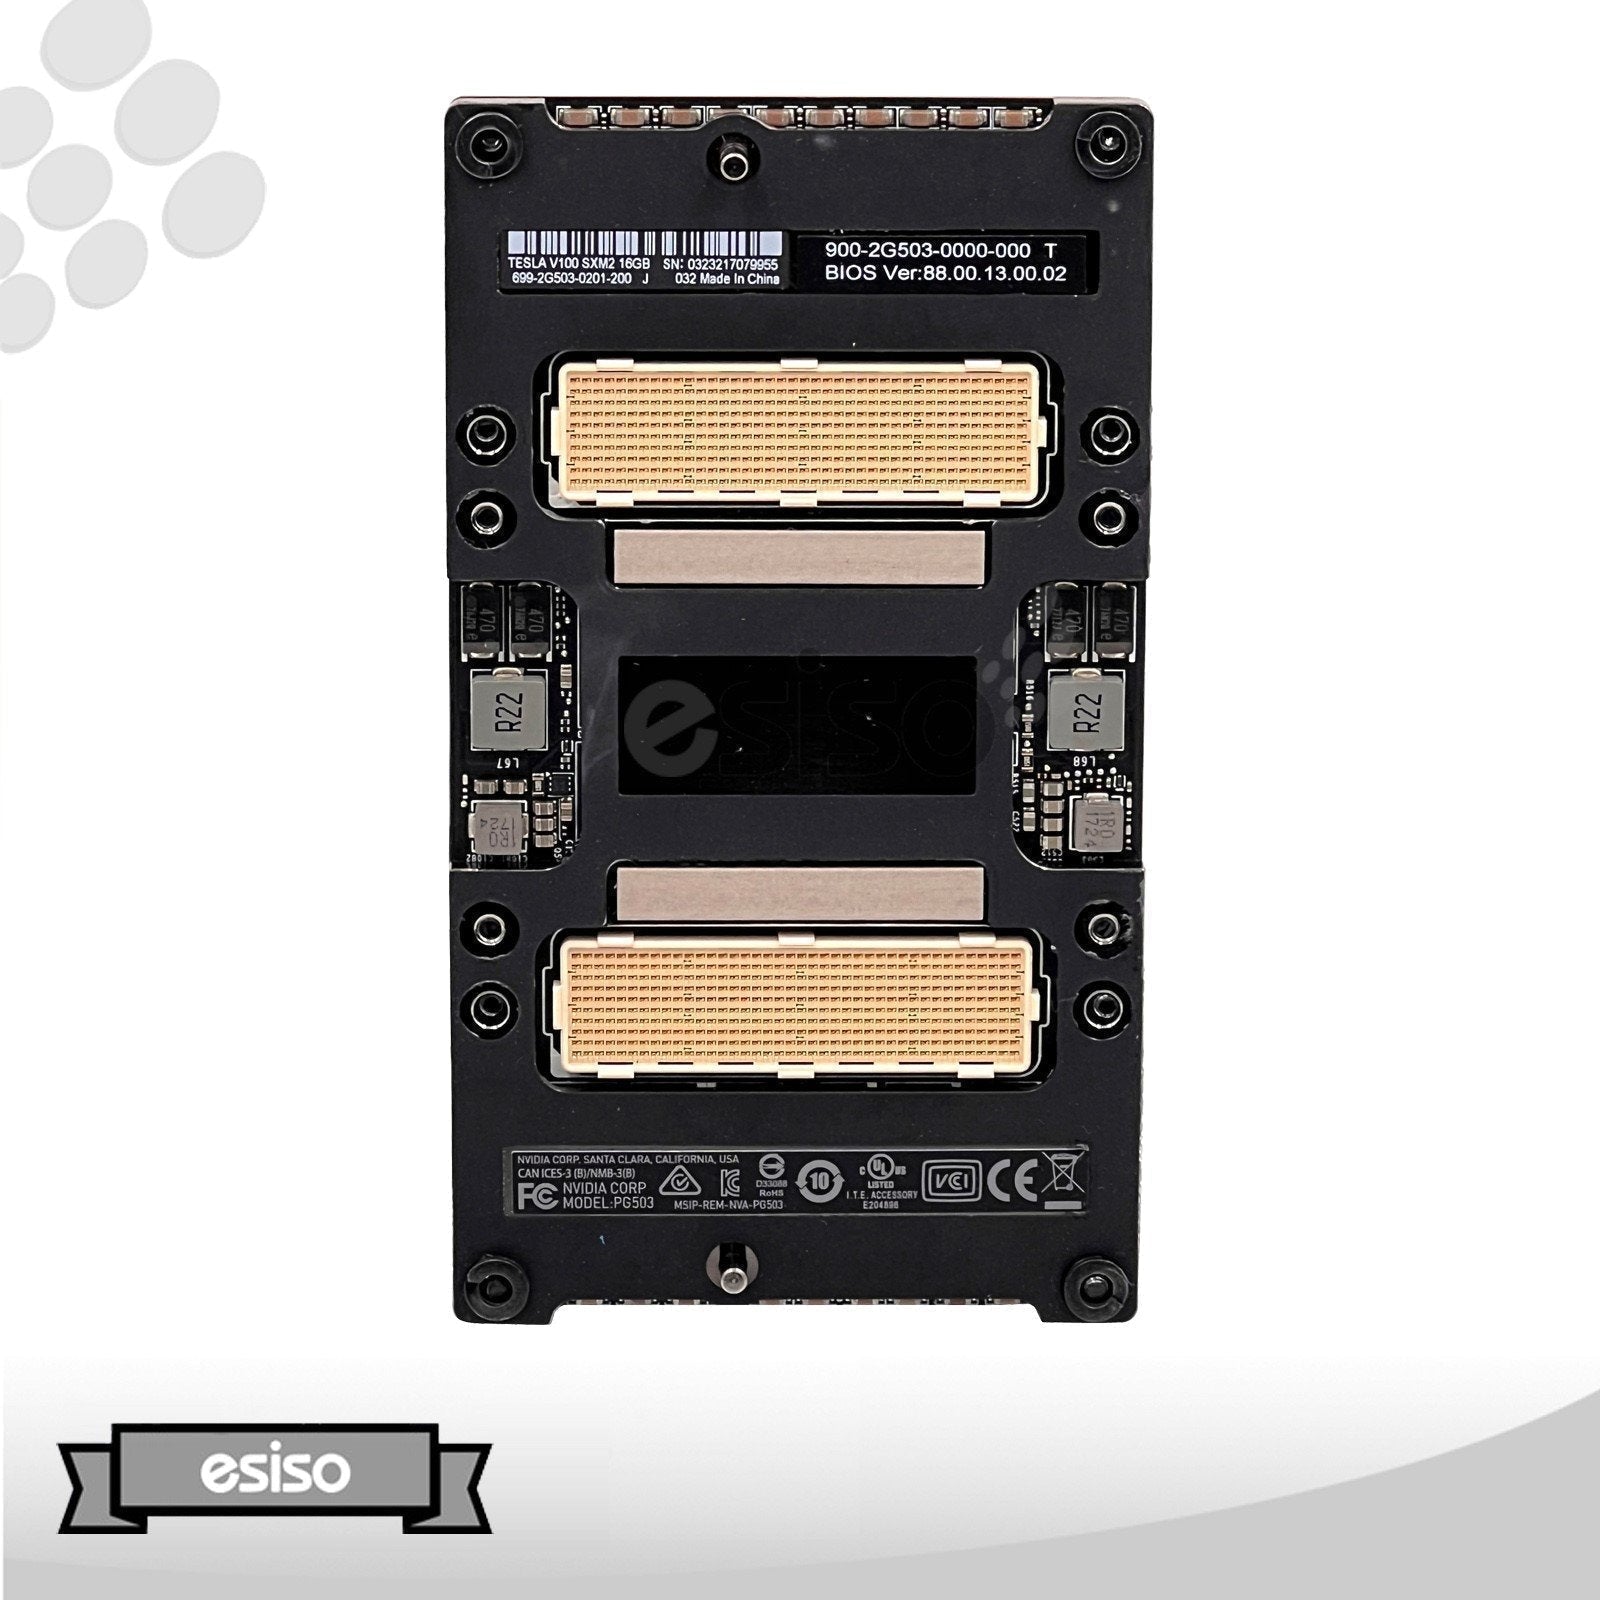 900-2G503-0000-000 NVIDIA TESLA V100 SXM2 16GB HBM2 GPU